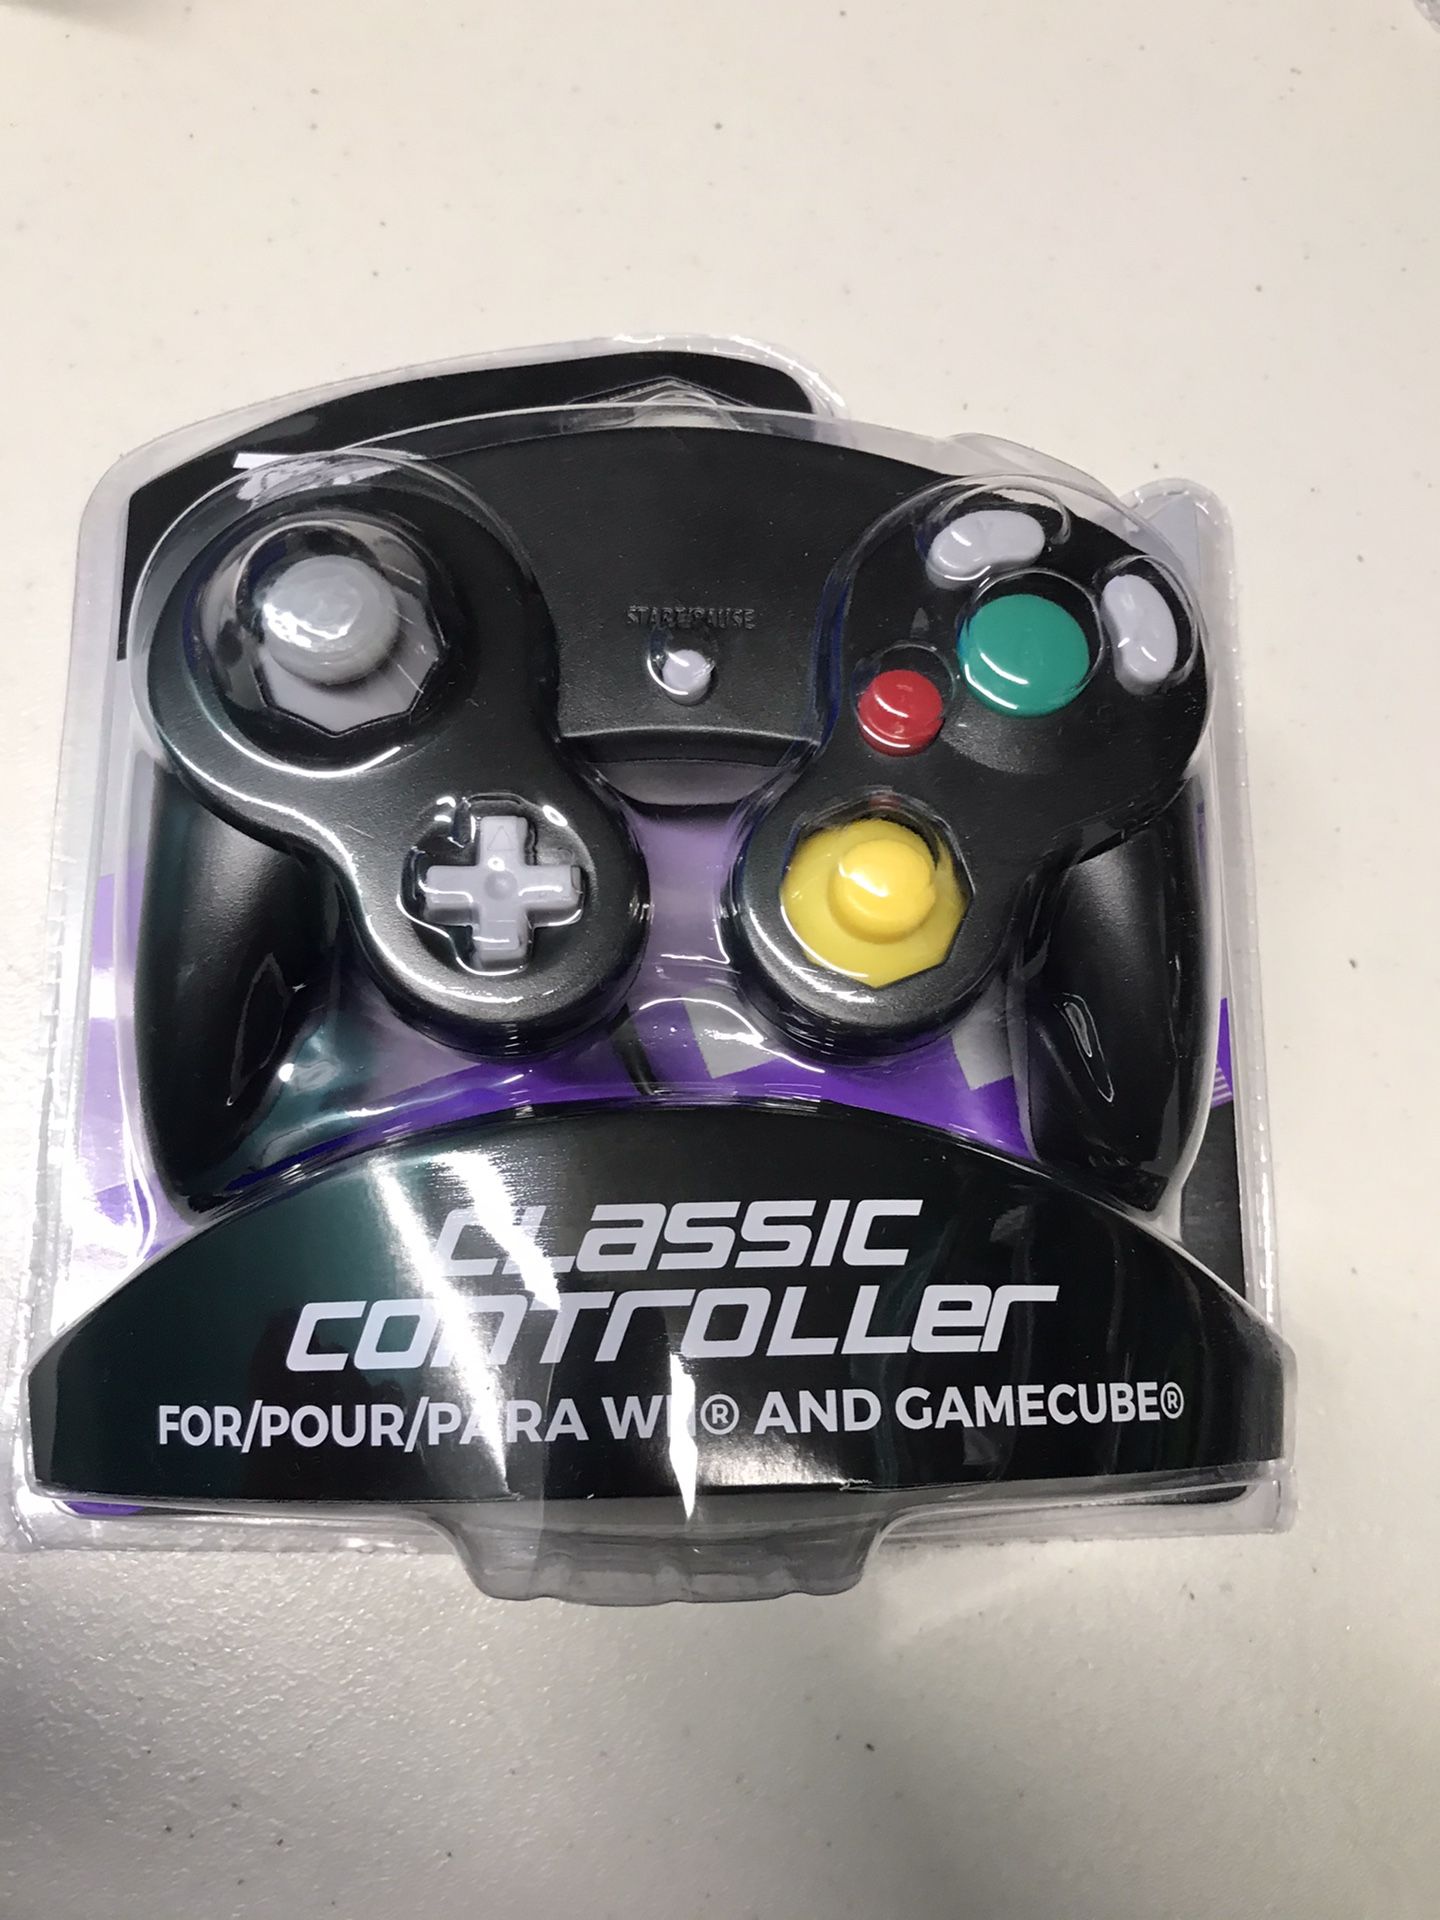 GameCube controller